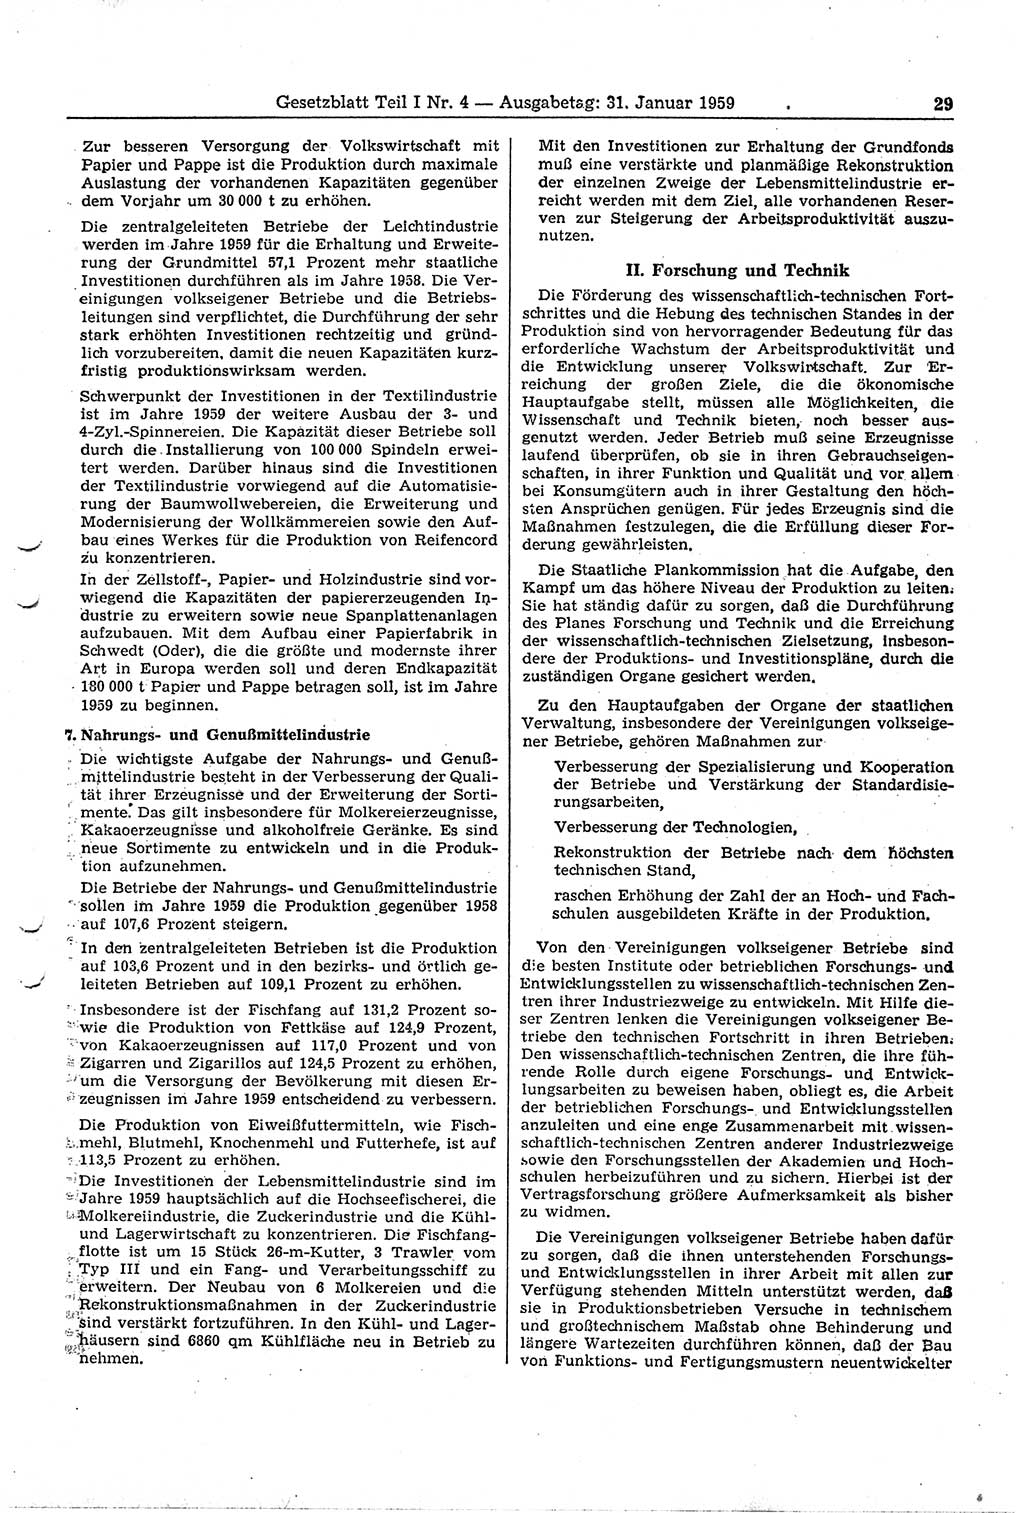 Gesetzblatt (GBl.) der Deutschen Demokratischen Republik (DDR) Teil Ⅰ 1959, Seite 29 (GBl. DDR Ⅰ 1959, S. 29)